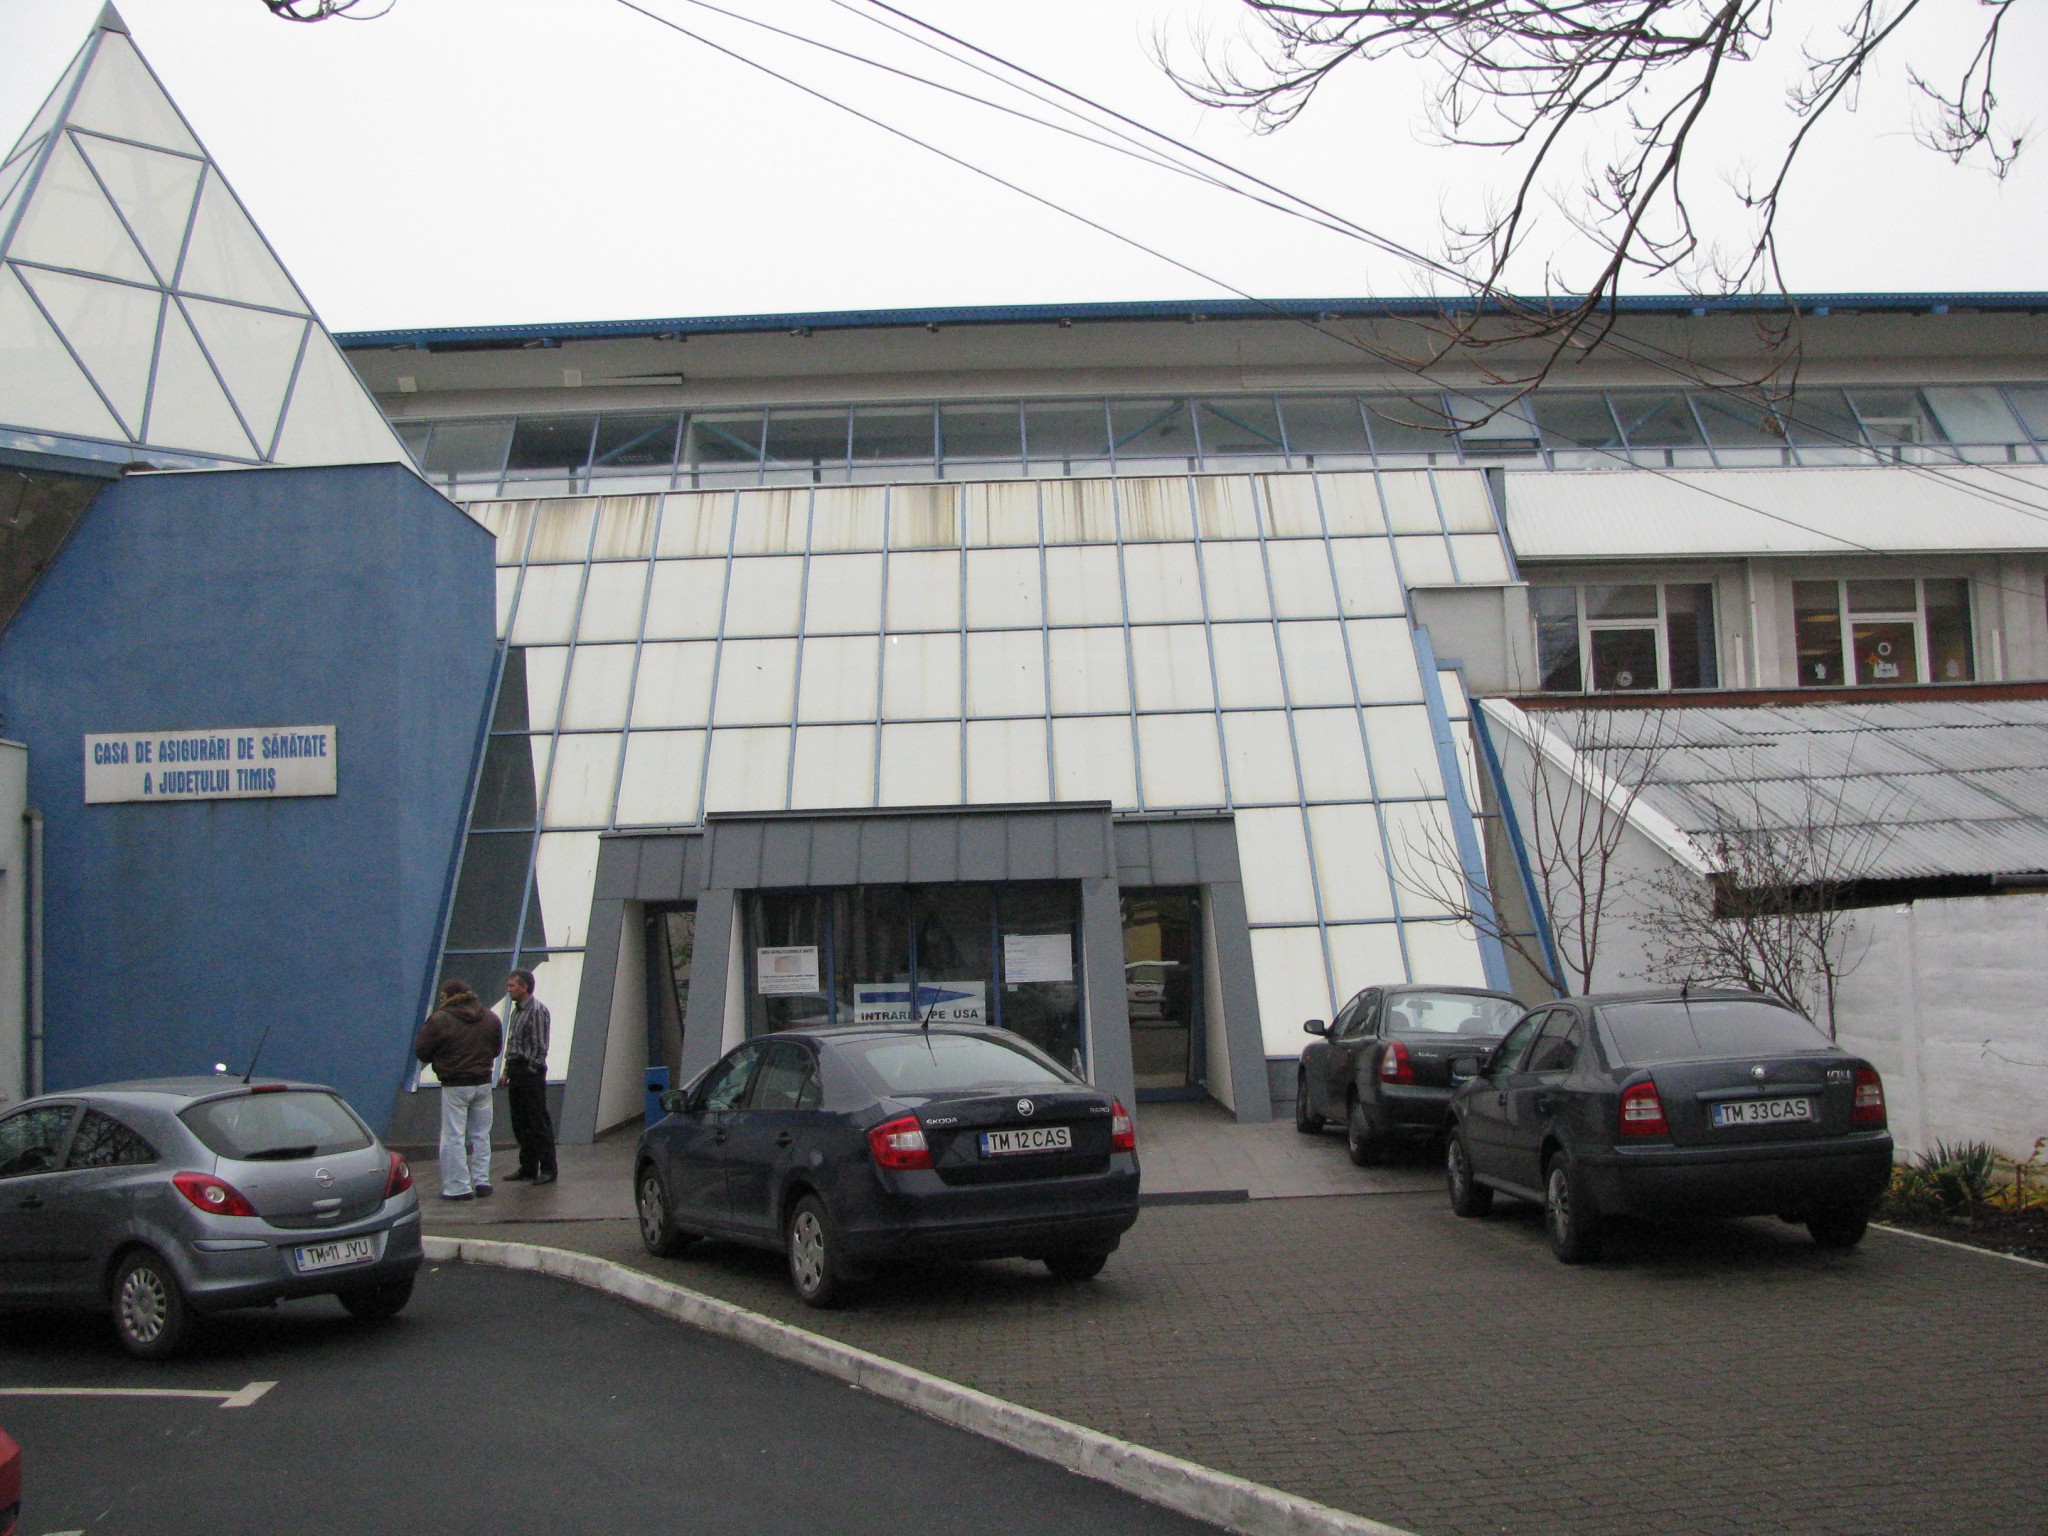 Casa de Sănătate Timiș invită furnizorii de servicii medicale la sediul instituției. Care este motivul